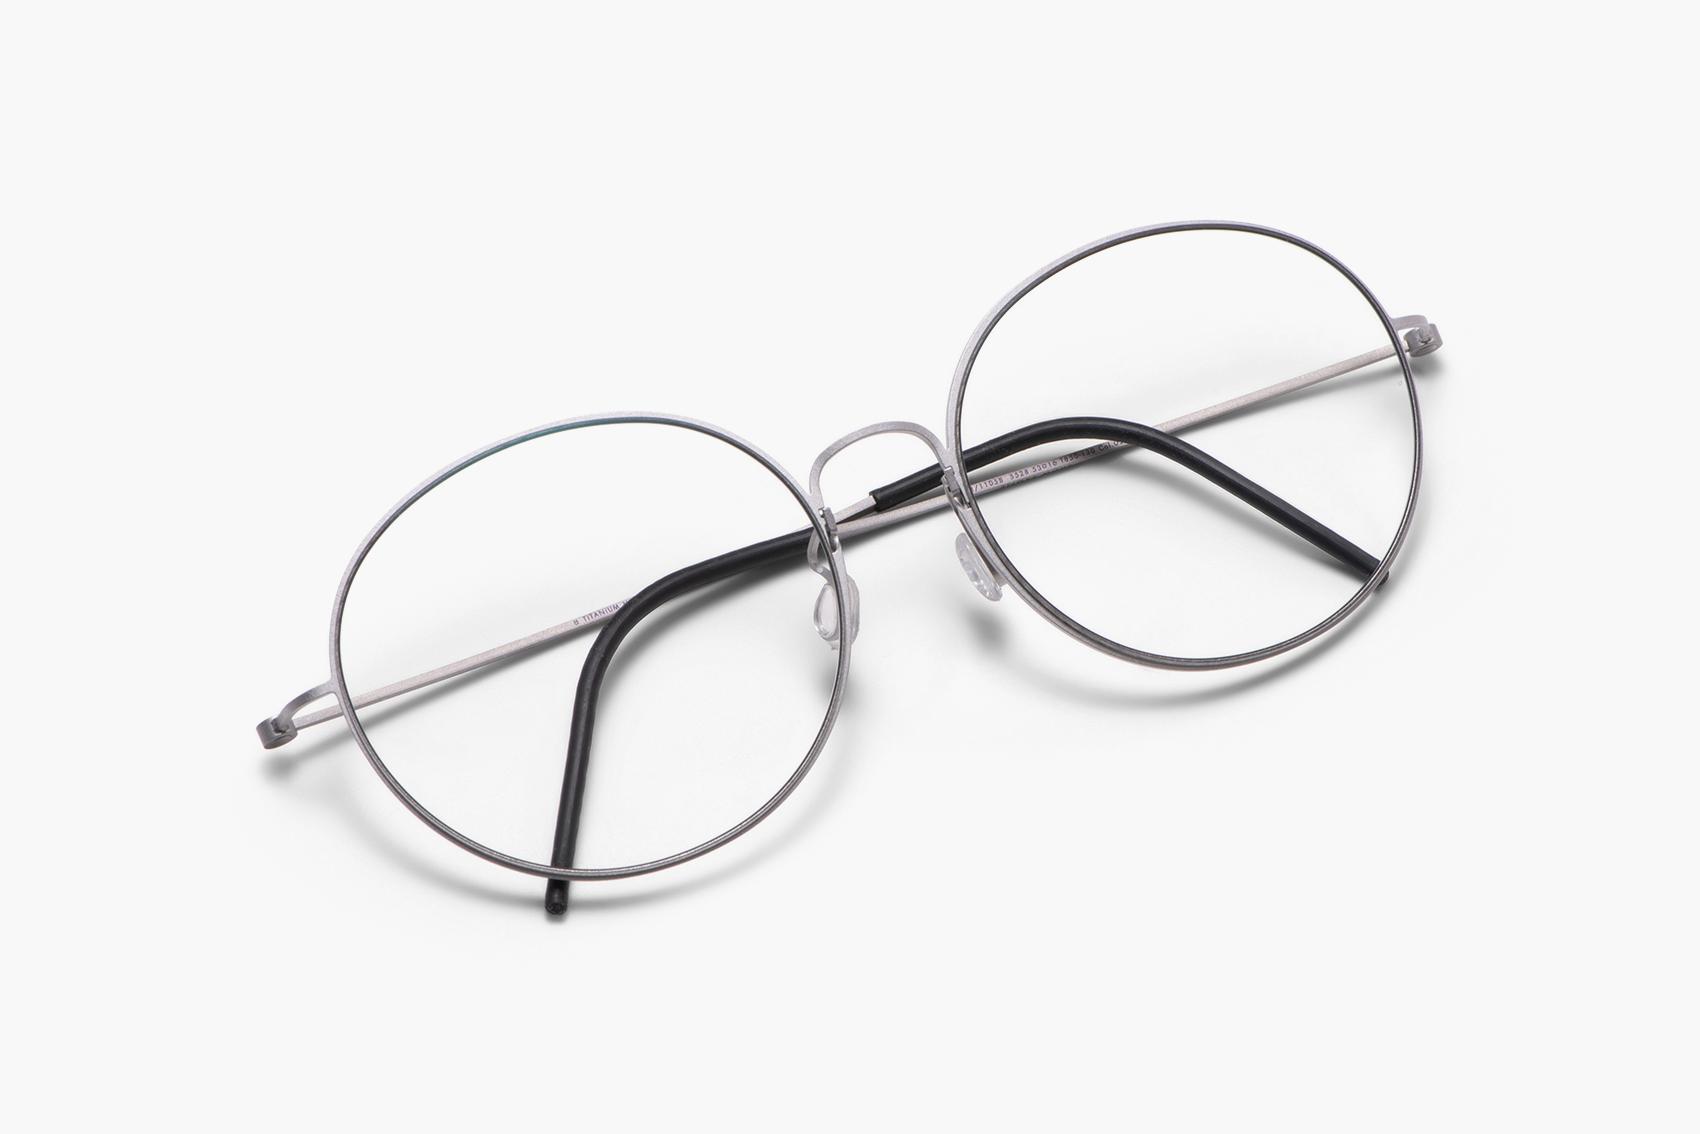 tavle Objector gentagelse 5528 by LINDBERG | Try on glasses online & find optician | FAVR